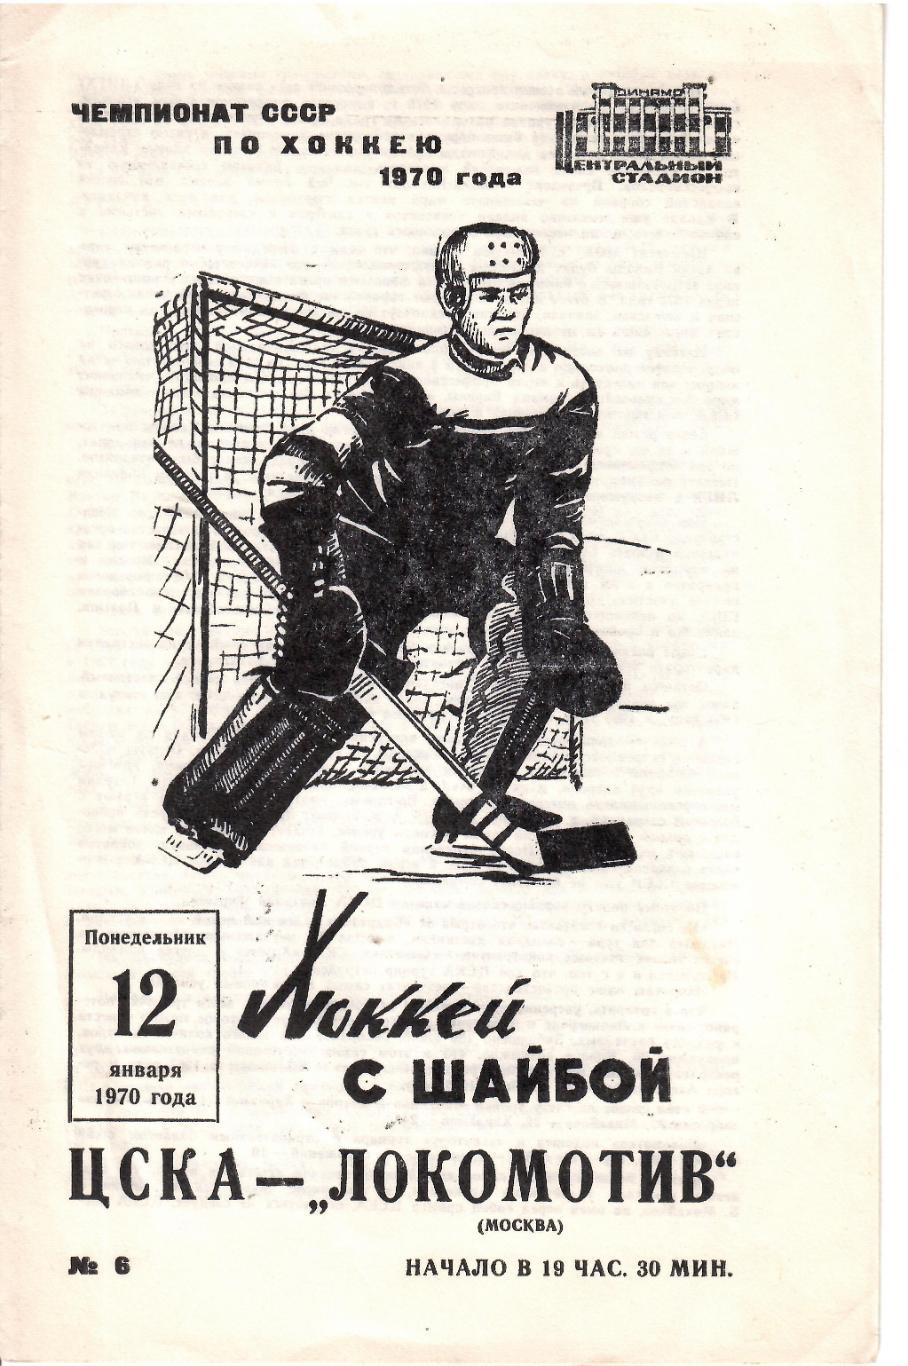 1970 Хоккей ЦСКА - Локомотив Москва